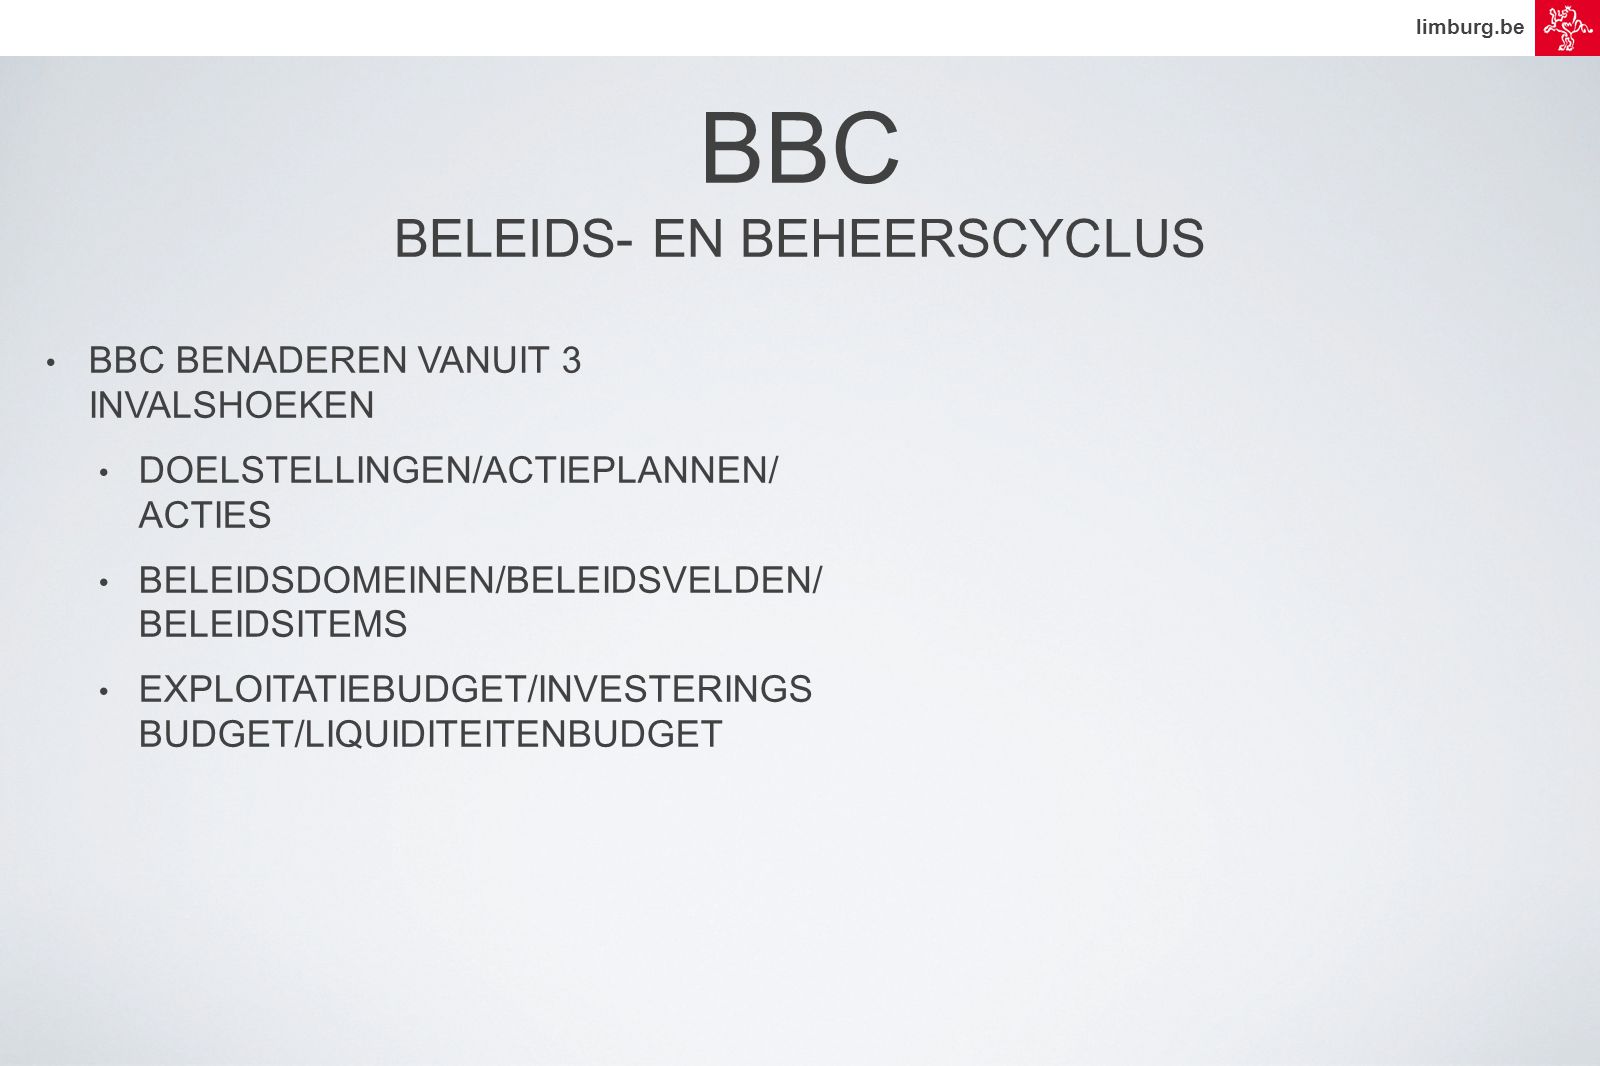 limburg.be • BBC BENADEREN VANUIT 3 INVALSHOEKEN • DOELSTELLINGEN/ACTIEPLANNEN/ ACTIES • BELEIDSDOMEINEN/BELEIDSVELDEN/ BELEIDSITEMS • EXPLOITATIEBUDGET/INVESTERINGS BUDGET/LIQUIDITEITENBUDGET BBC BELEIDS- EN BEHEERSCYCLUS